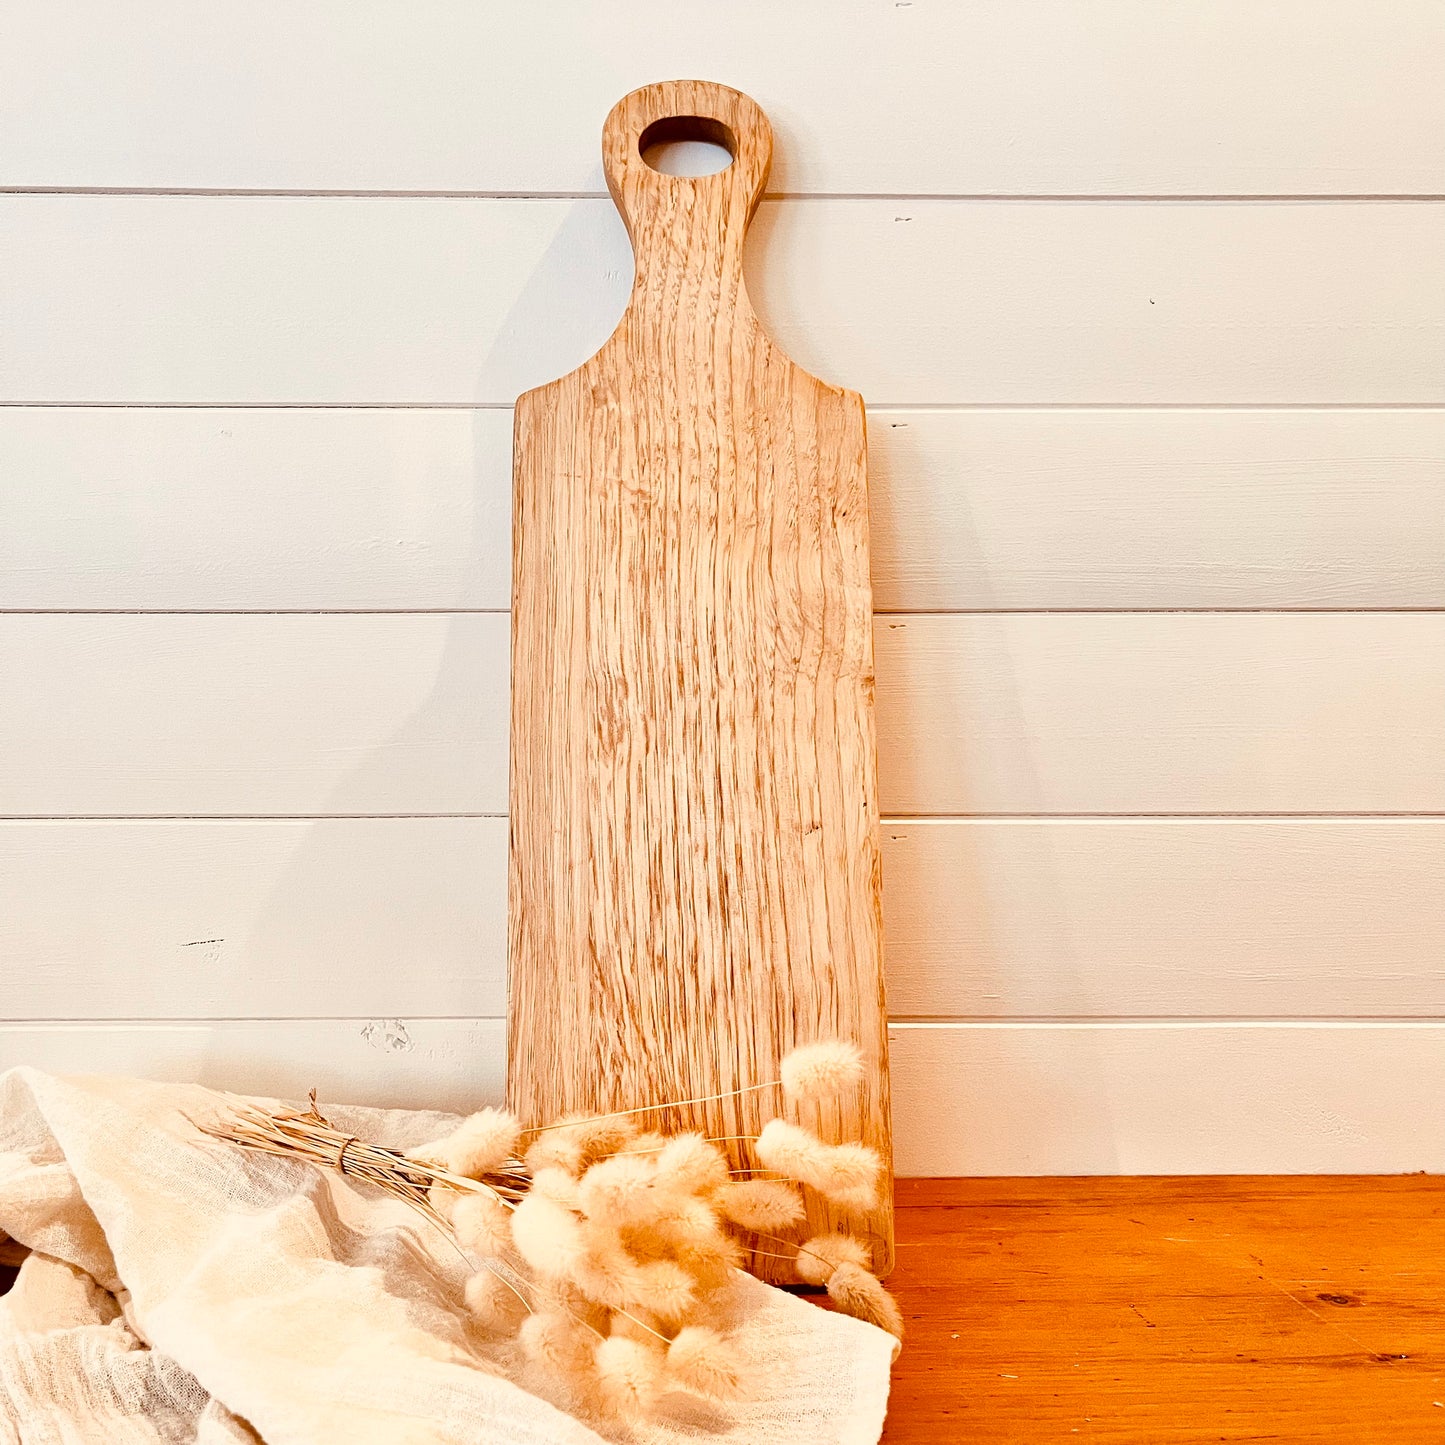 Wooden bread board